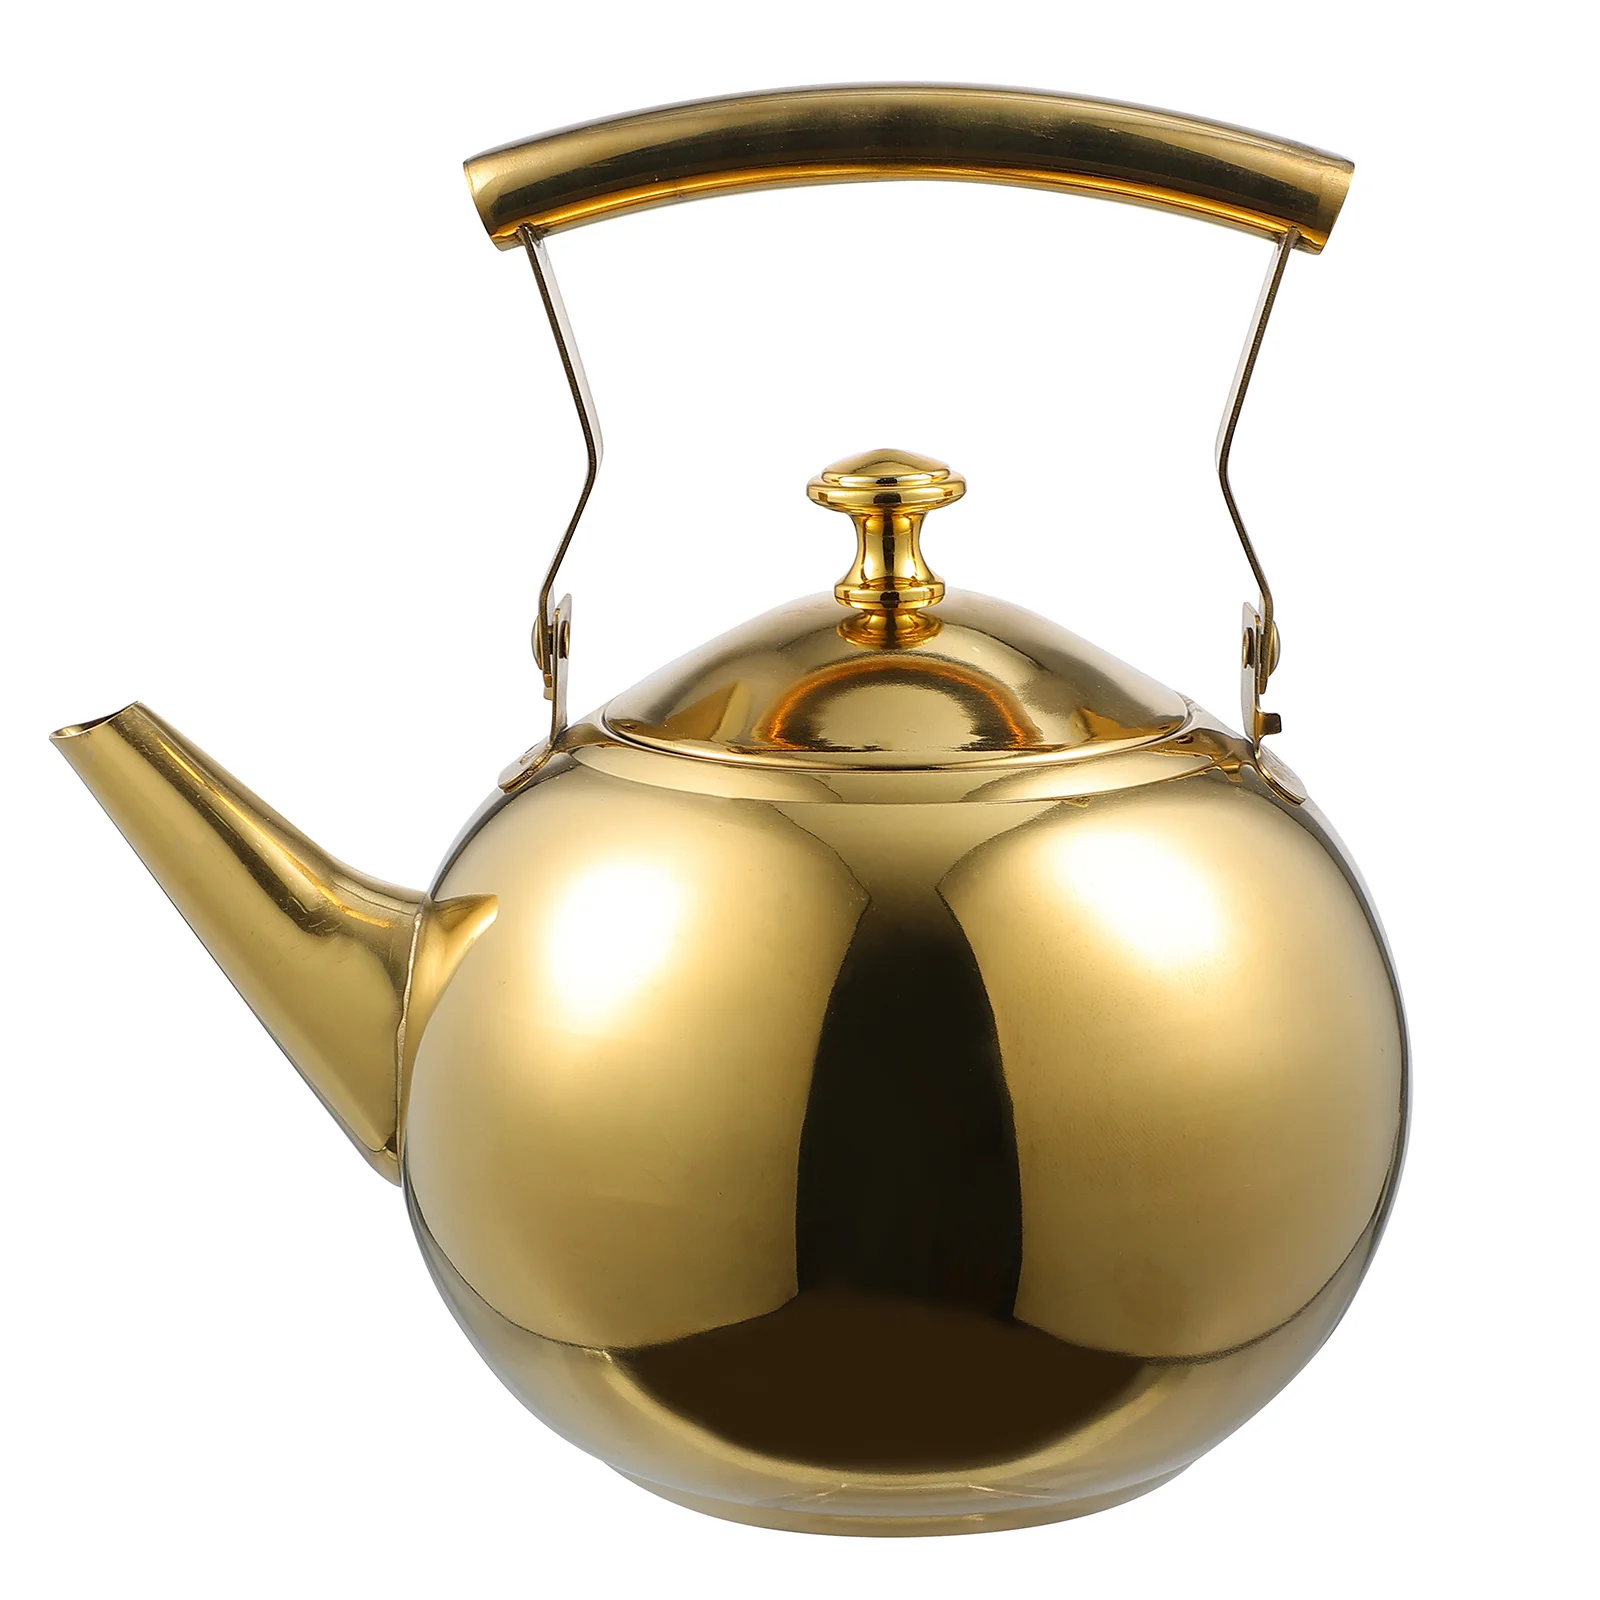 

Pot Heated Coffee Mug Tea Kettle Teapot Home Stove Stainless Steel Teakettle Make